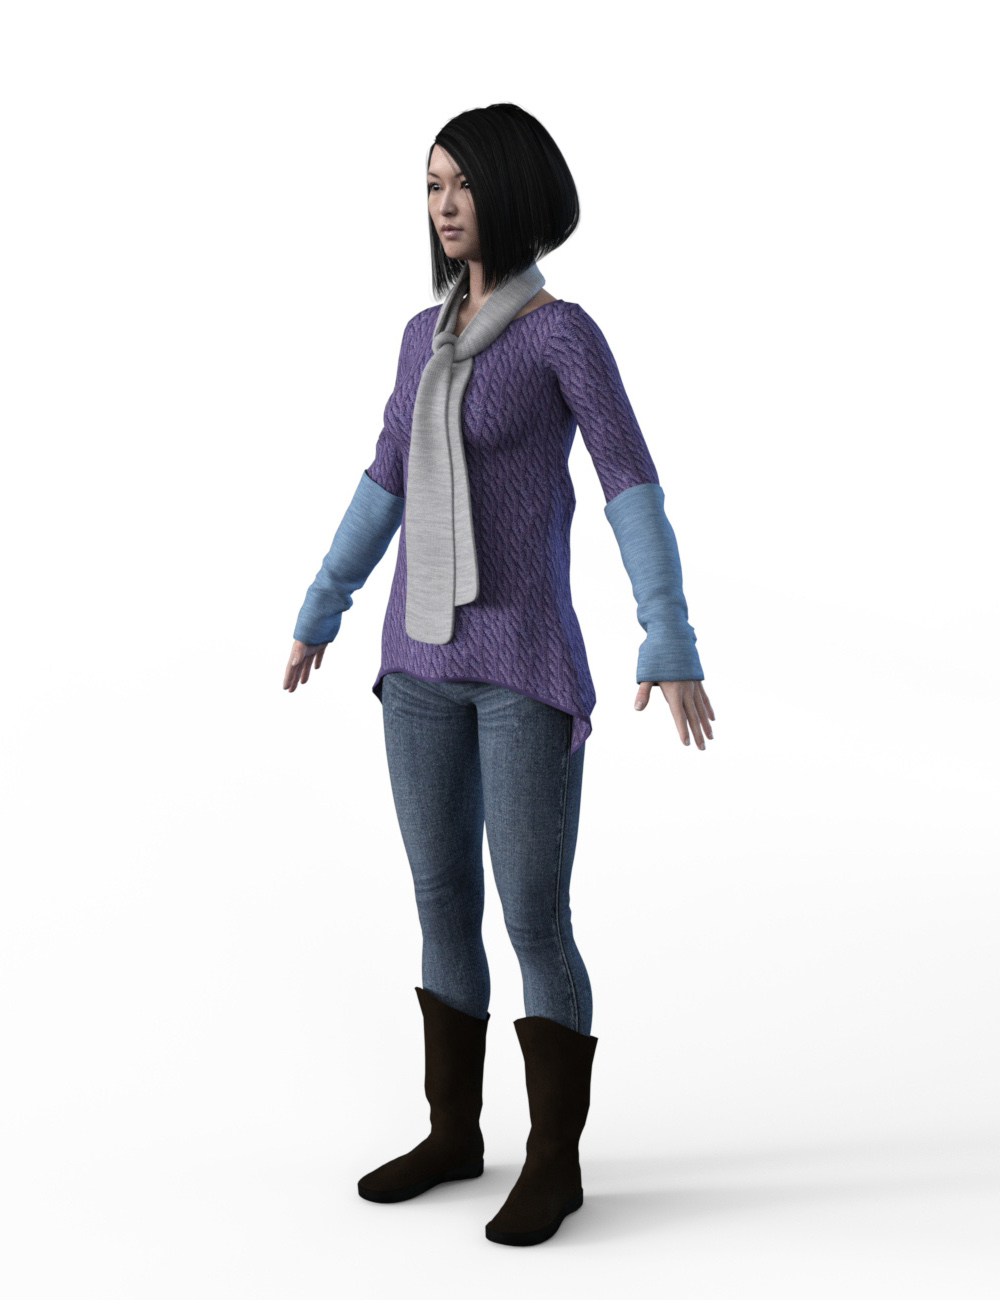 FBX- Base Female Vigilante Outfit by: Paleo, 3D Models by Daz 3D